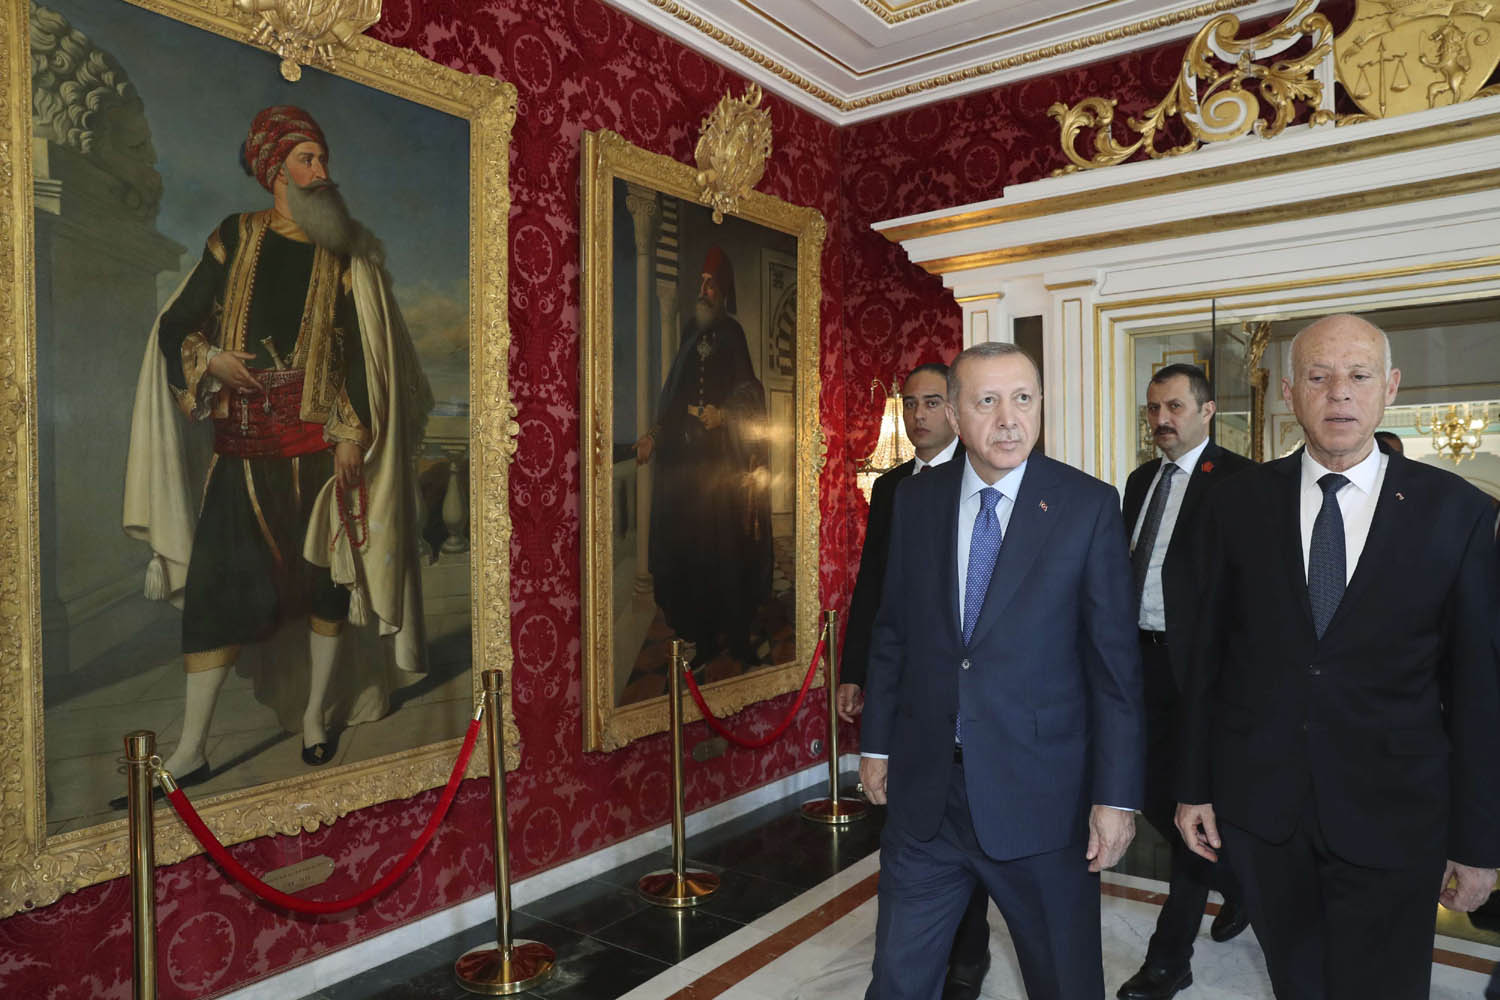 الرئيس التونسي قيس سعيد يصطحب الرئيس التركي رجب طيب أردوغان في جولة في قصر قرطاج الرئاسي